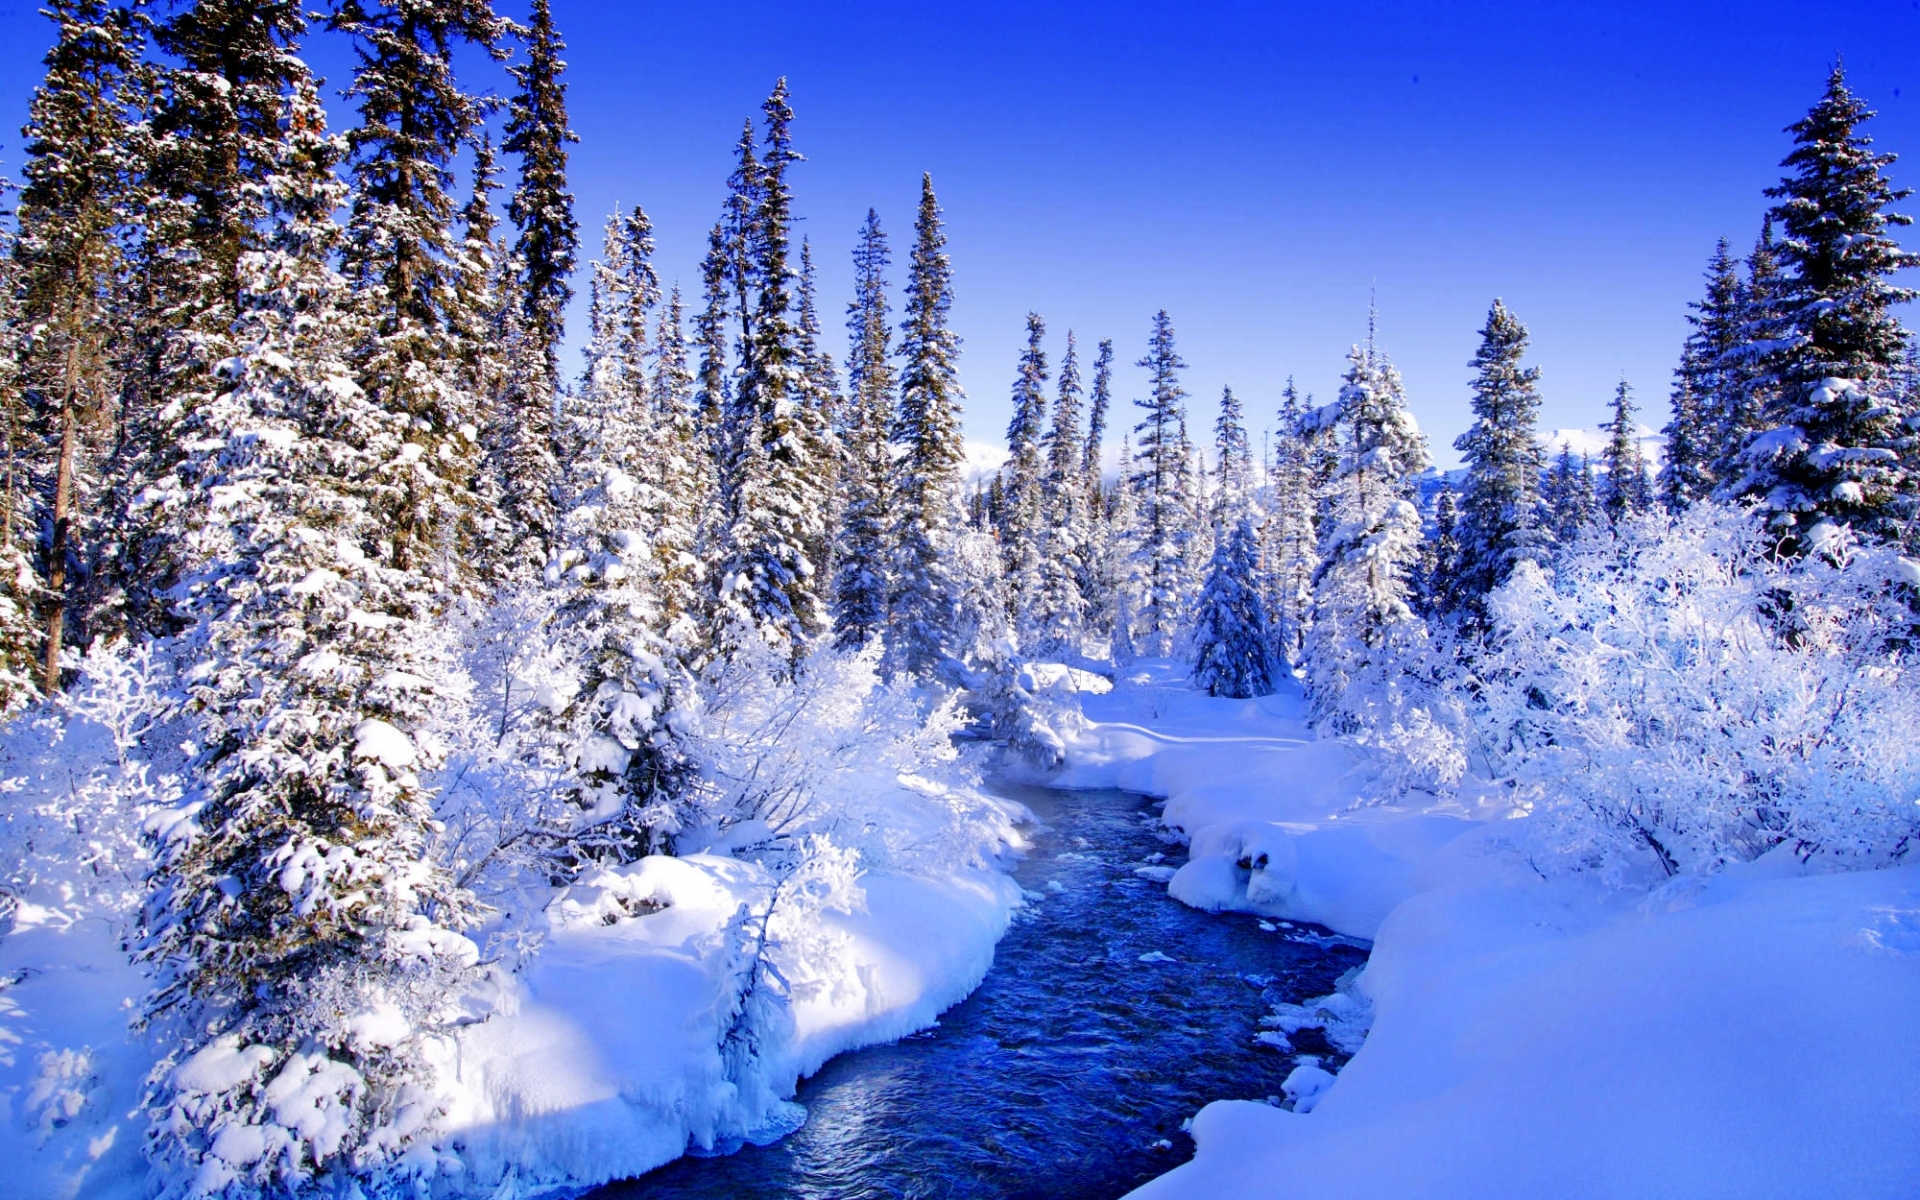 Скачать обои бесплатно Река, Пейзаж, Зима картинка на рабочий стол ПК